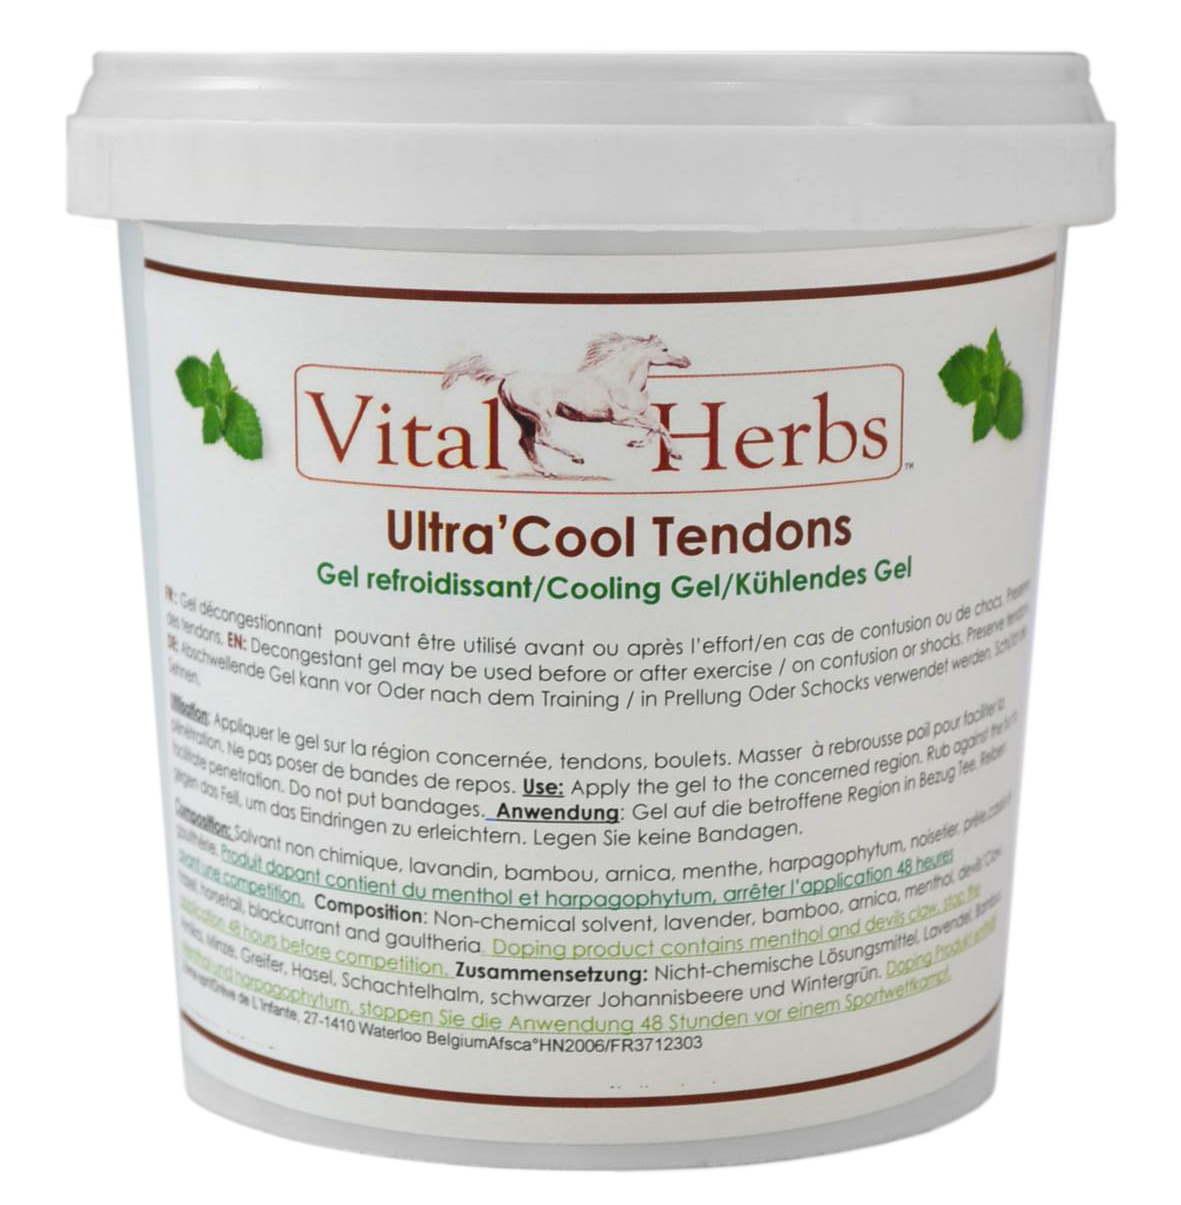 gel-tendons-ultra-cool-tendon-gel-vital-herbs